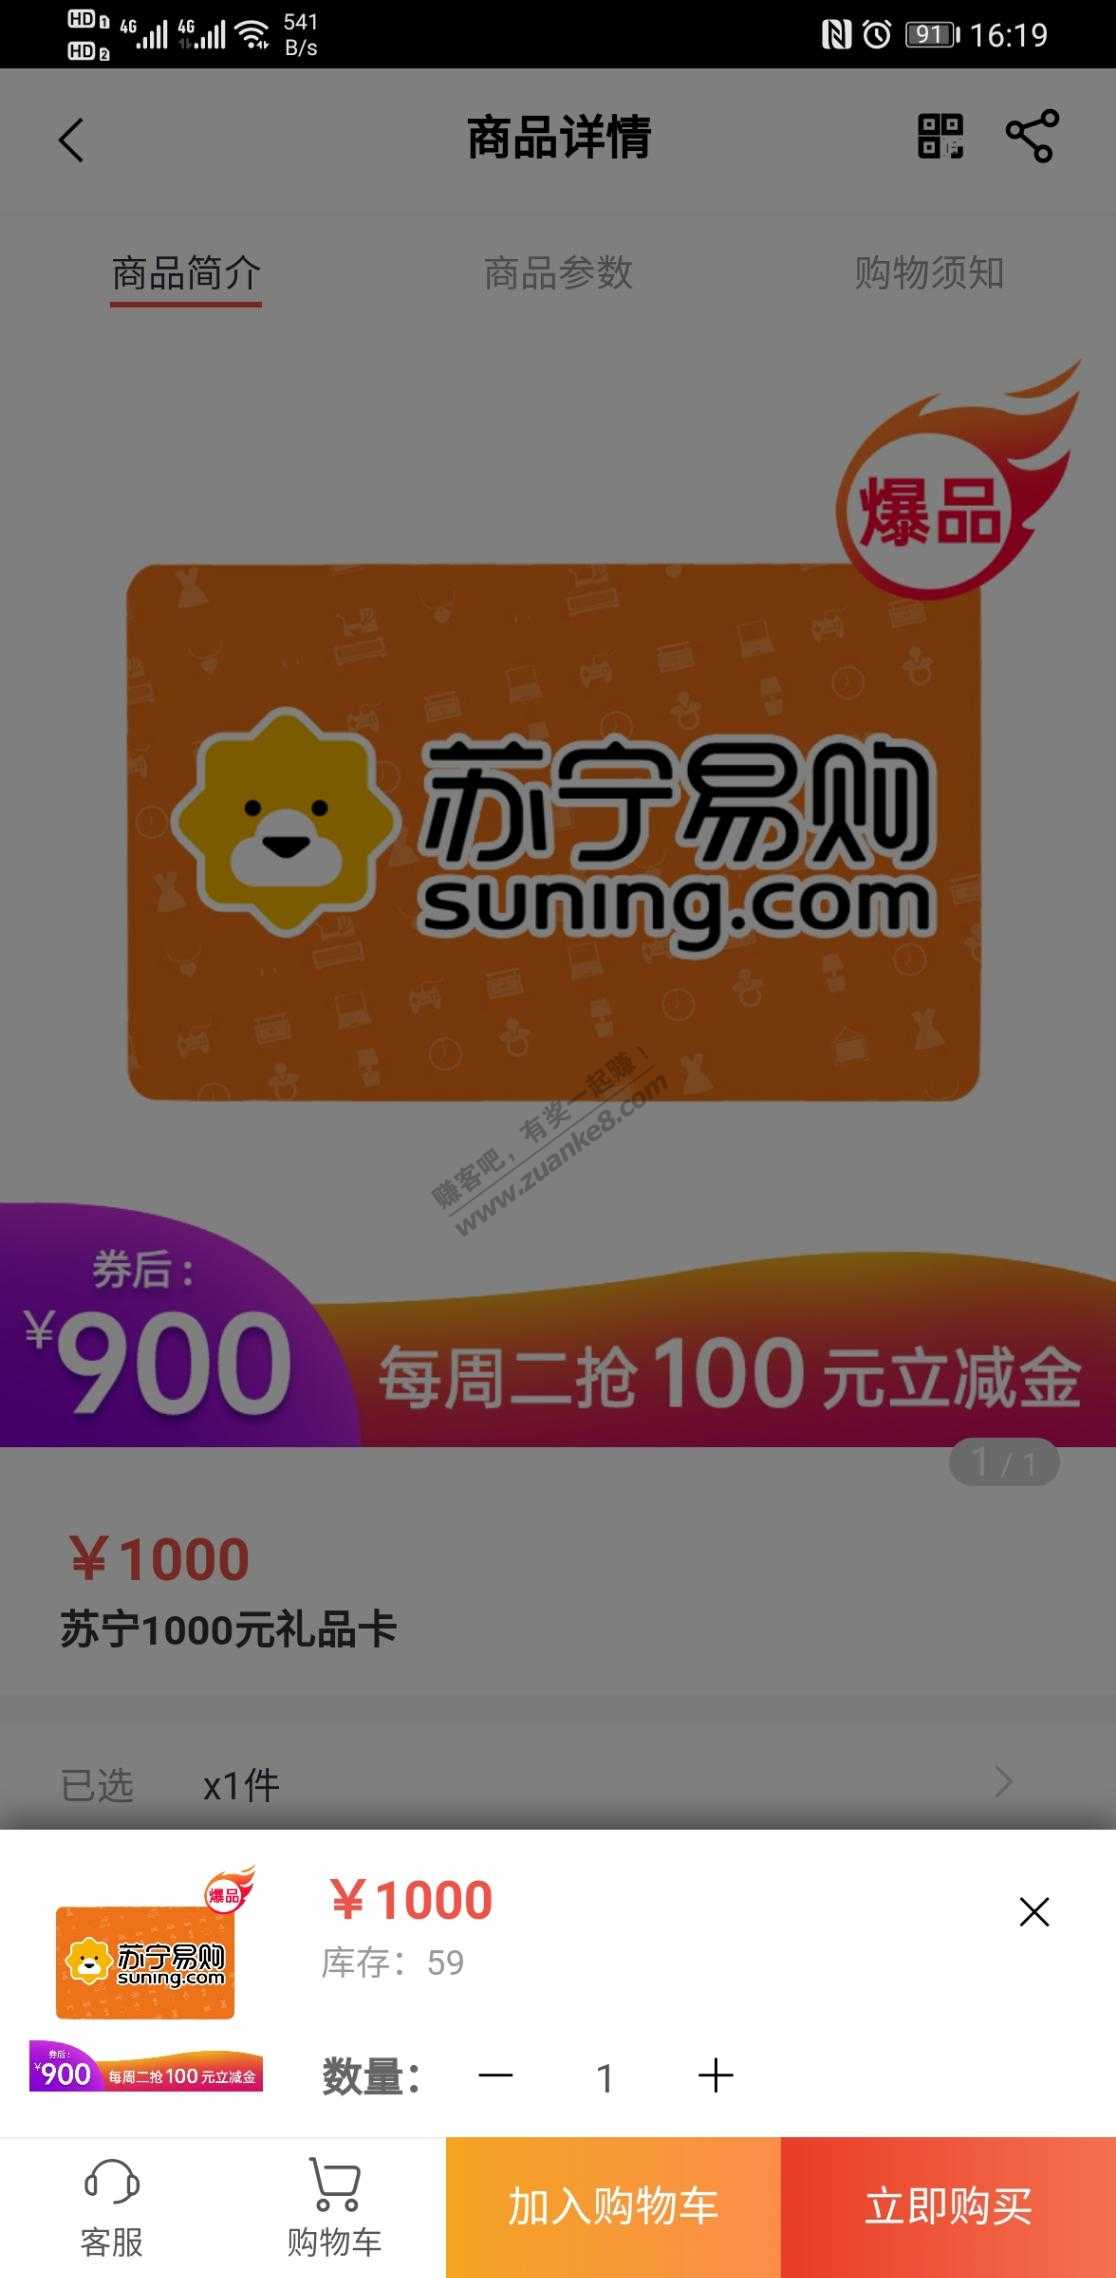 工银e生活1000苏宁卡有货-惠小助(52huixz.com)